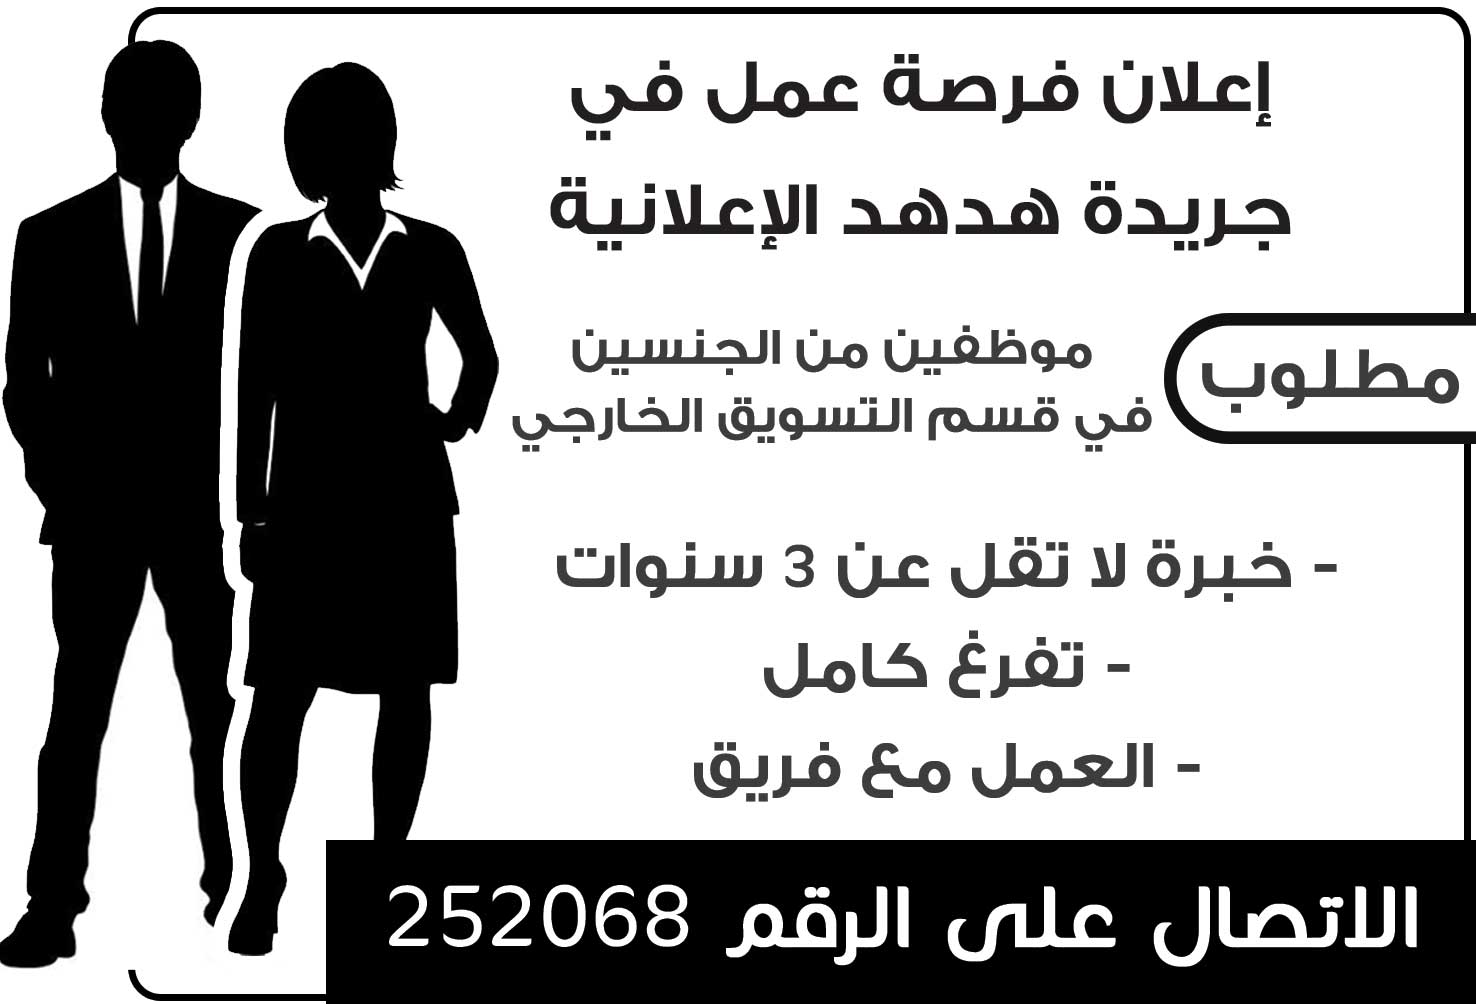 إعلان توظيف في هدهد -  - جريدة هدهد الإعلانية